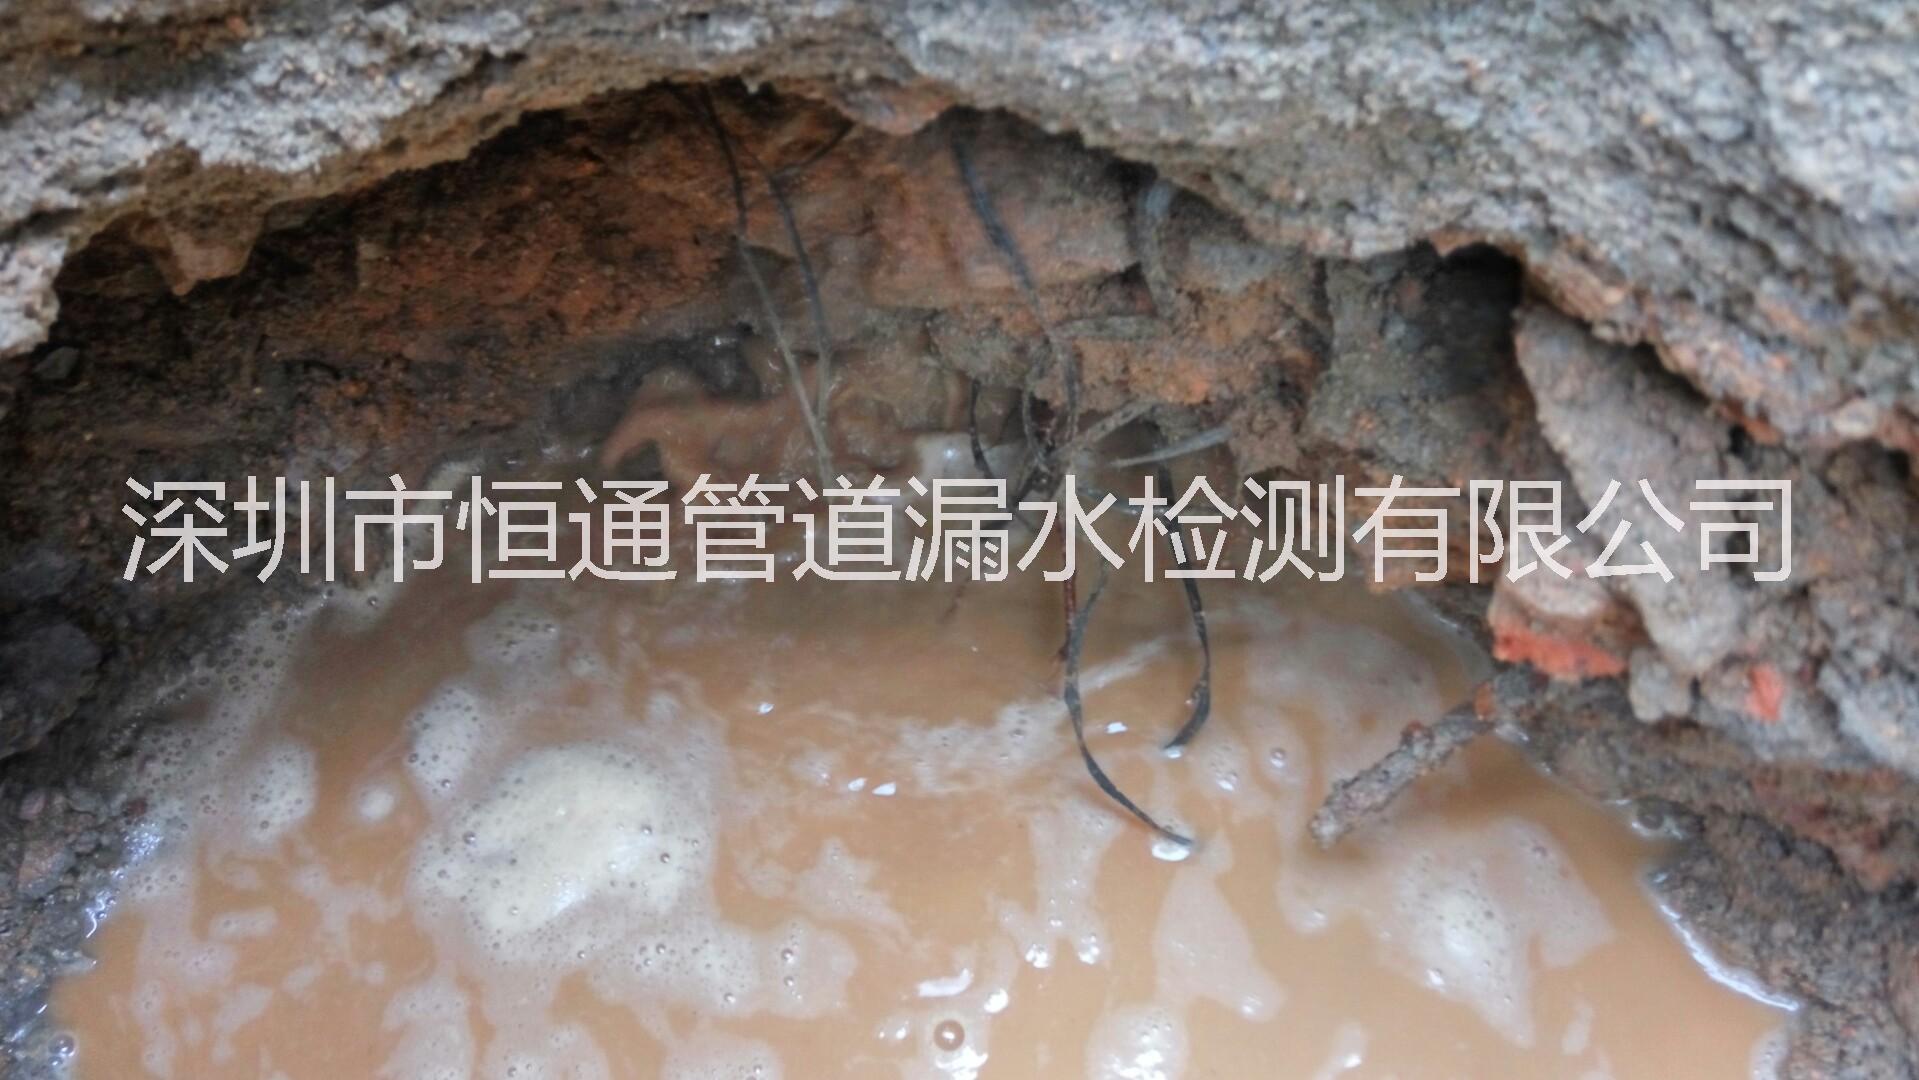 地下水管检测 地下水管维修 漏水检测